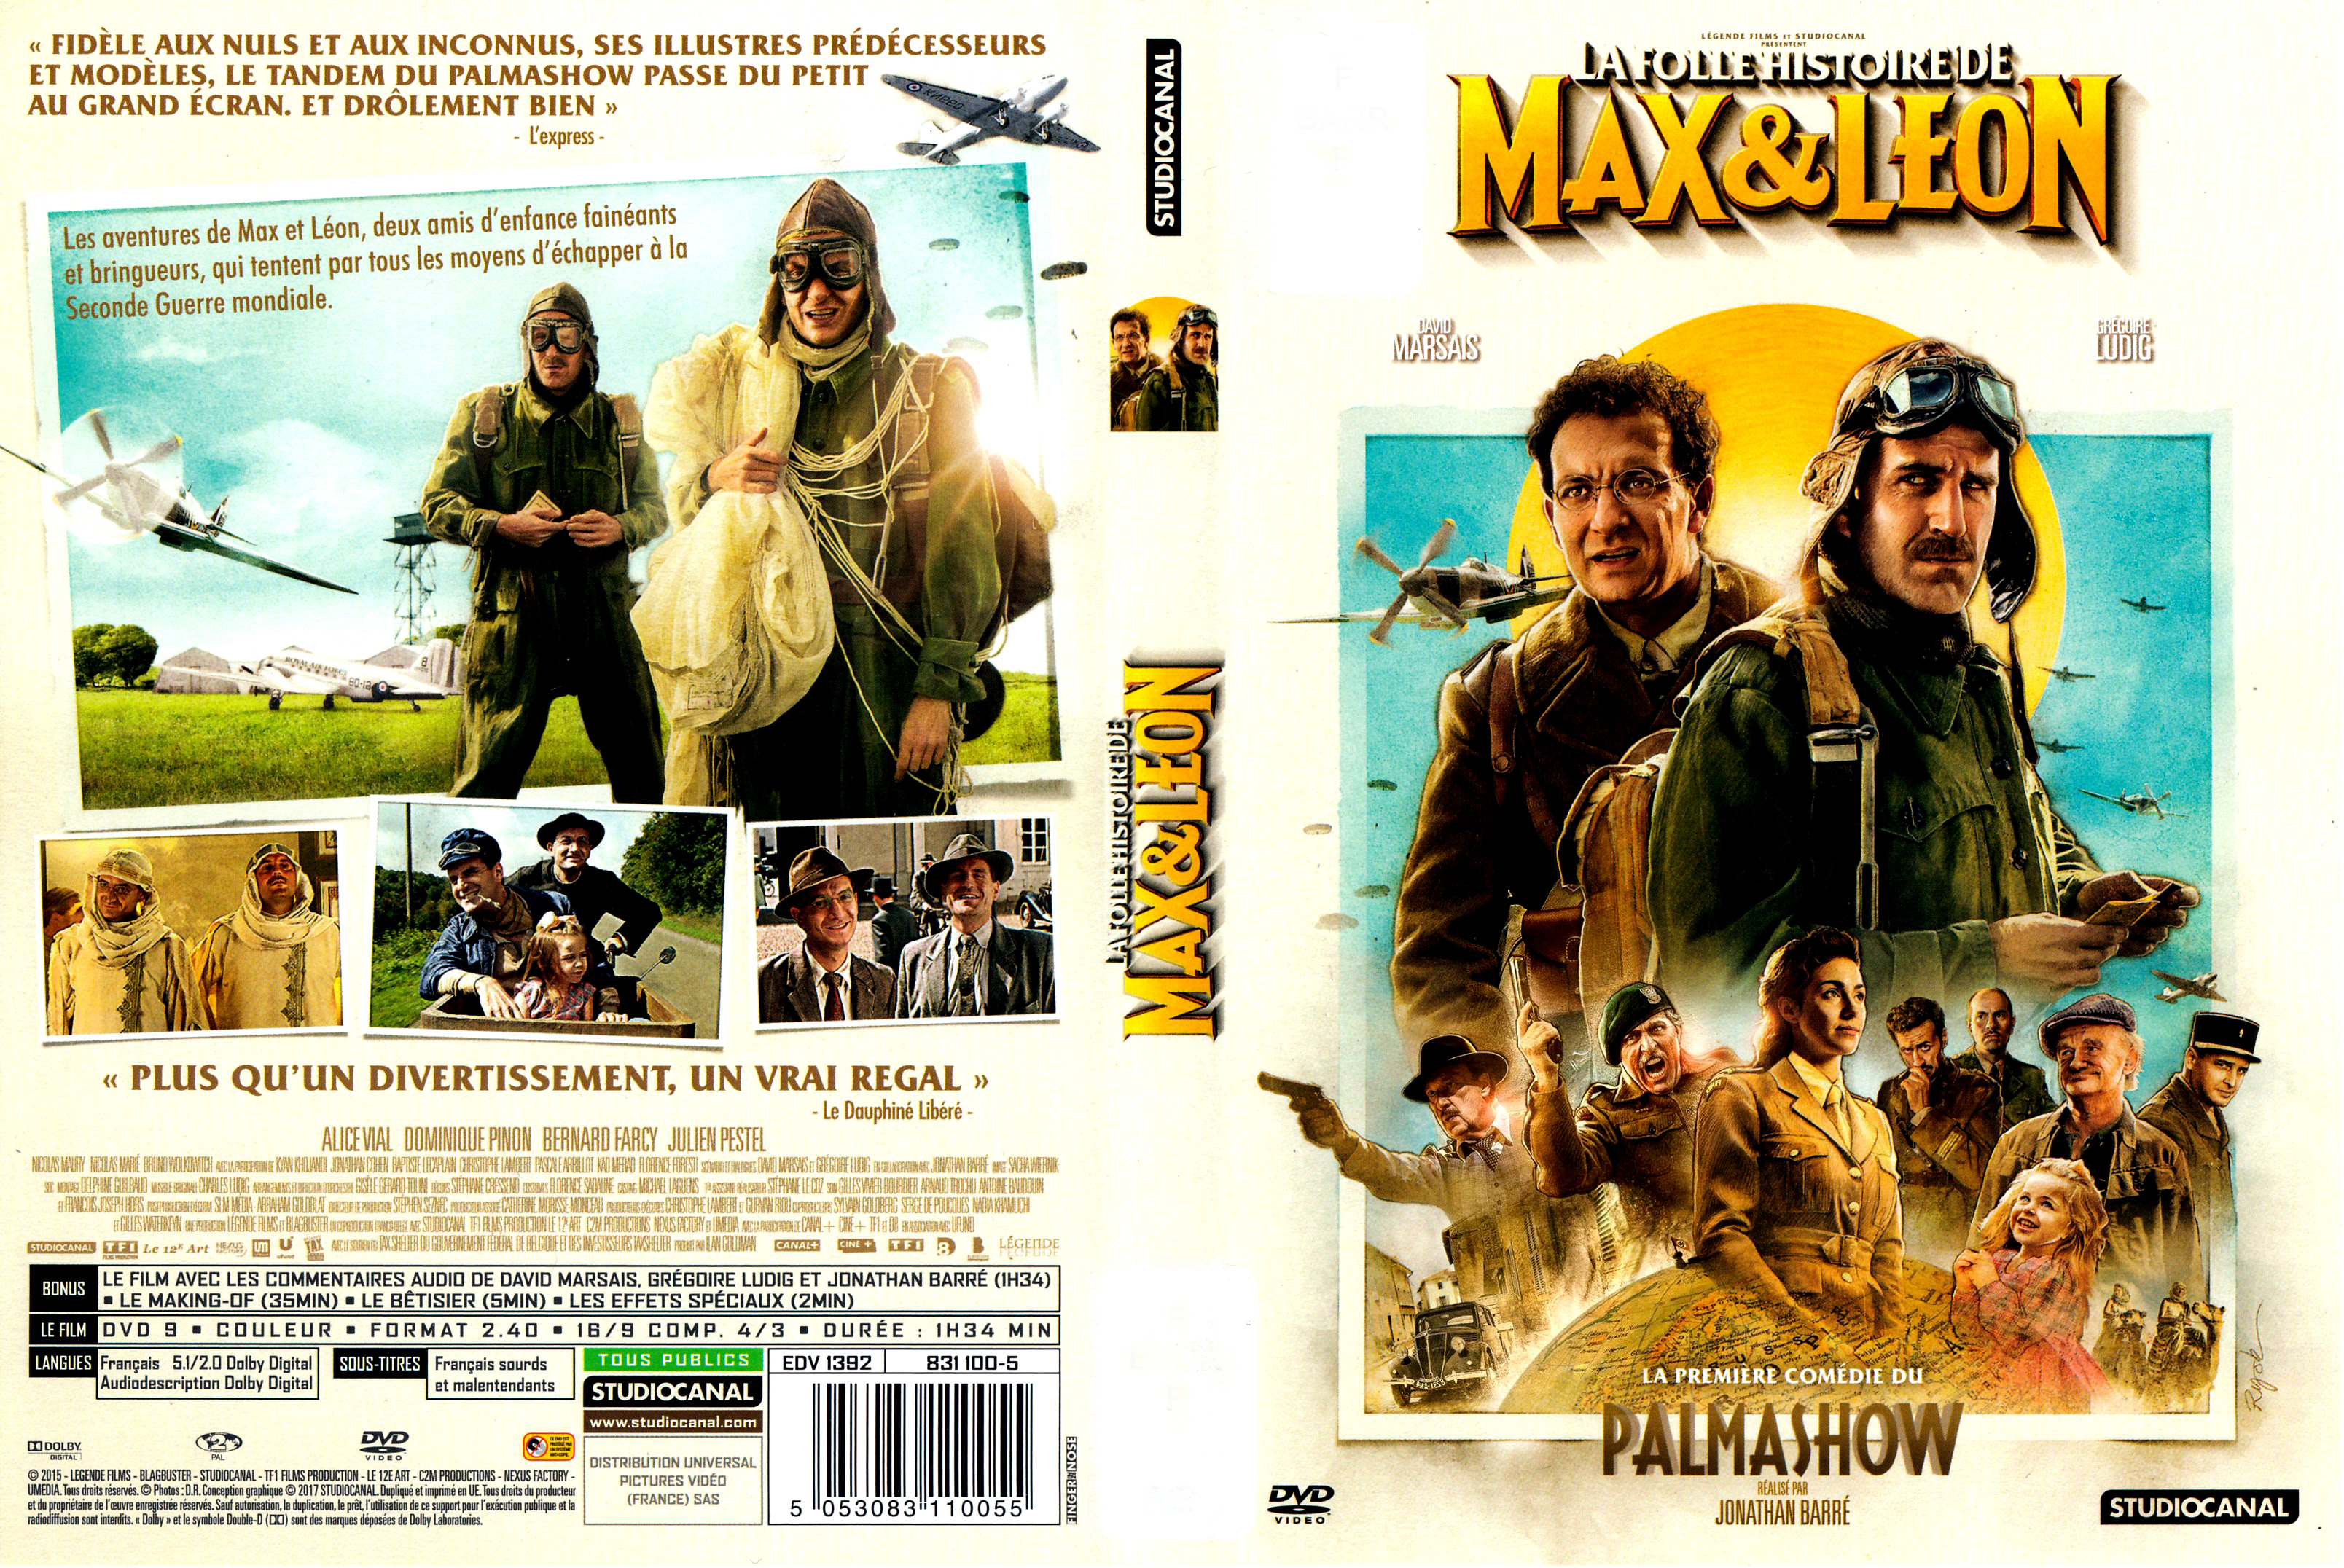 Jaquette DVD La Folle Histoire de Max et Lon